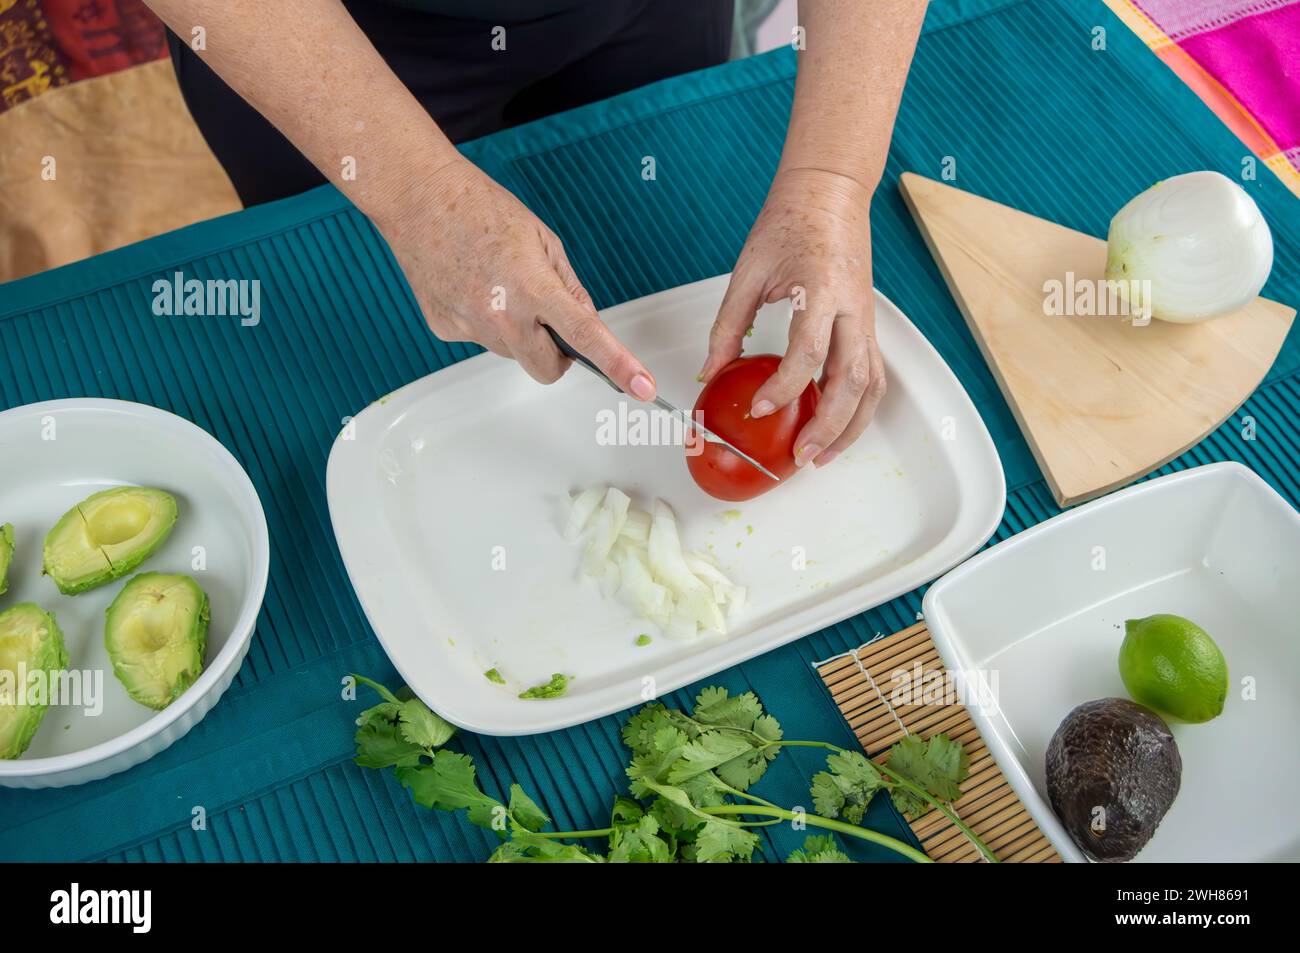 Mains fabriquant du guacamole avec des avocats mûrs. Une série d'images mettant en scène des mains transformant méticuleusement les avocats en un délice crémeux préparant le thé Banque D'Images